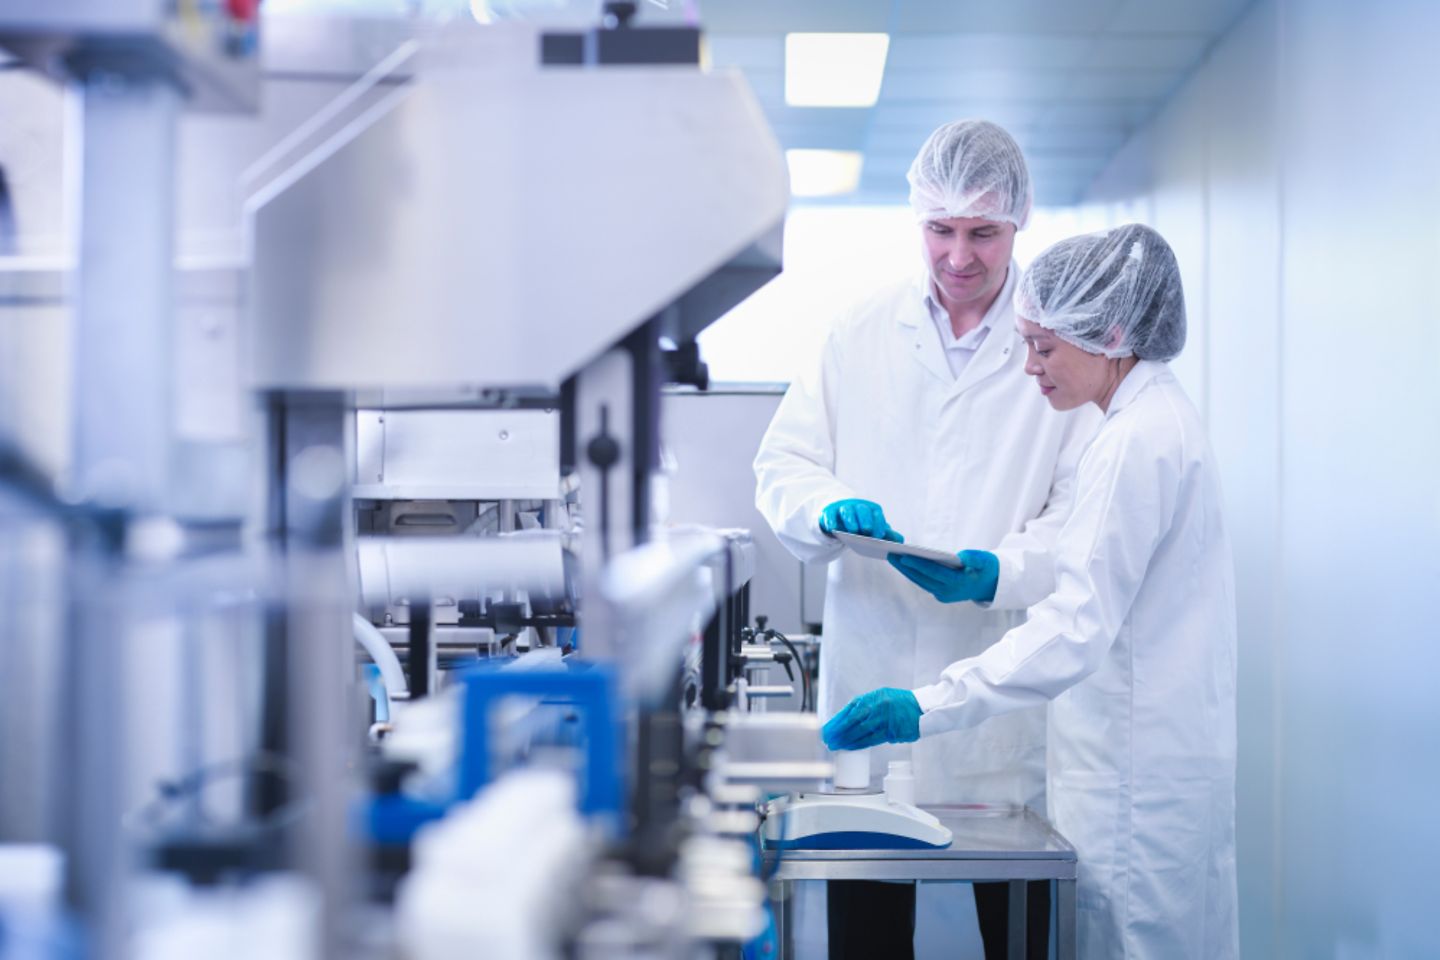 Trabajadores inspeccionan un producto en una planta de producción farmacéutica.